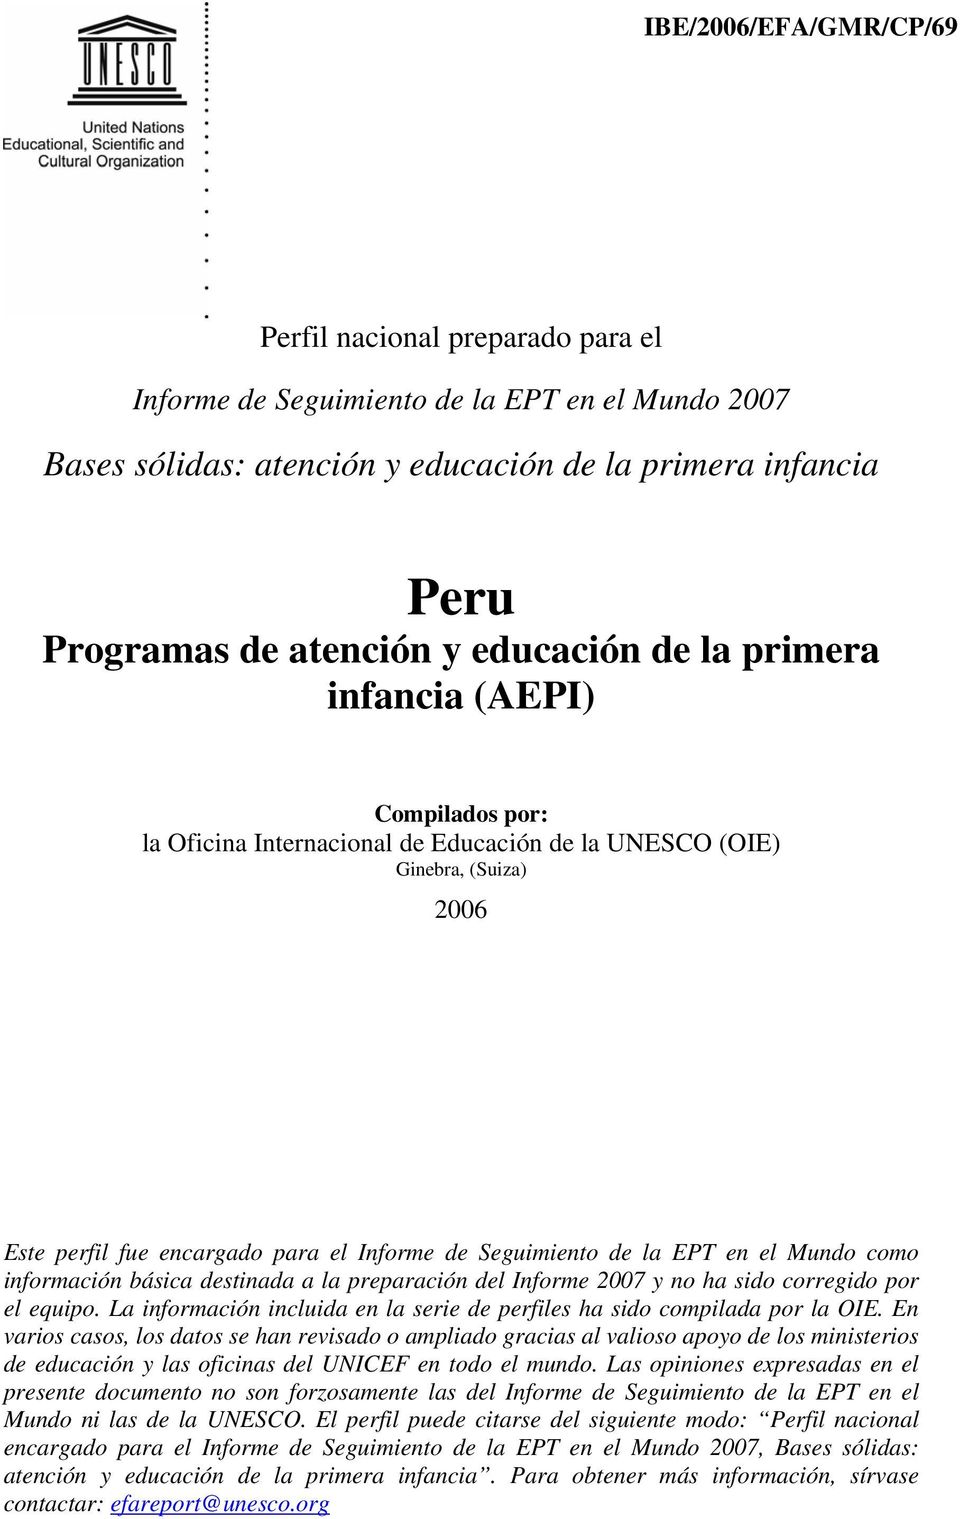 EPT en el Mundo como información básica destinada a la preparación del Informe 2007 y no ha sido corregido por el equipo. La información incluida en la serie de perfiles ha sido compilada por la OIE.